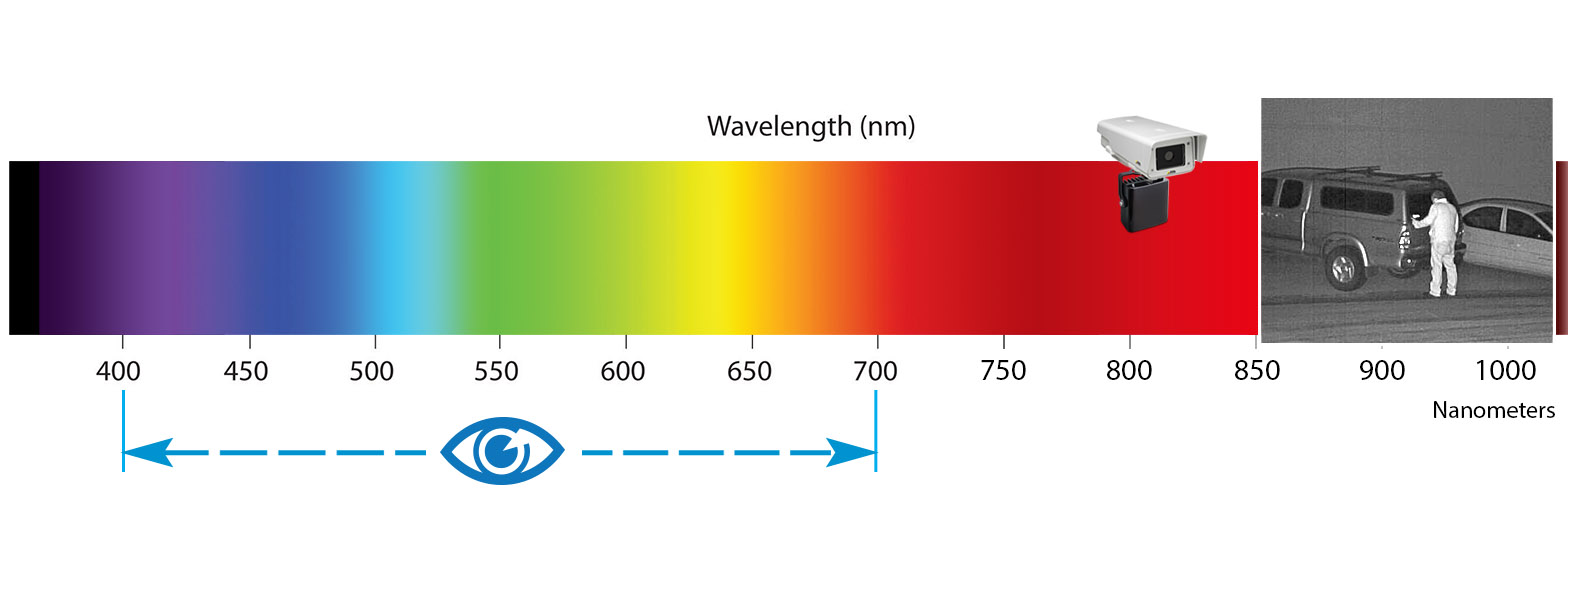 ¿Qué es el iluminador infrarrojo?